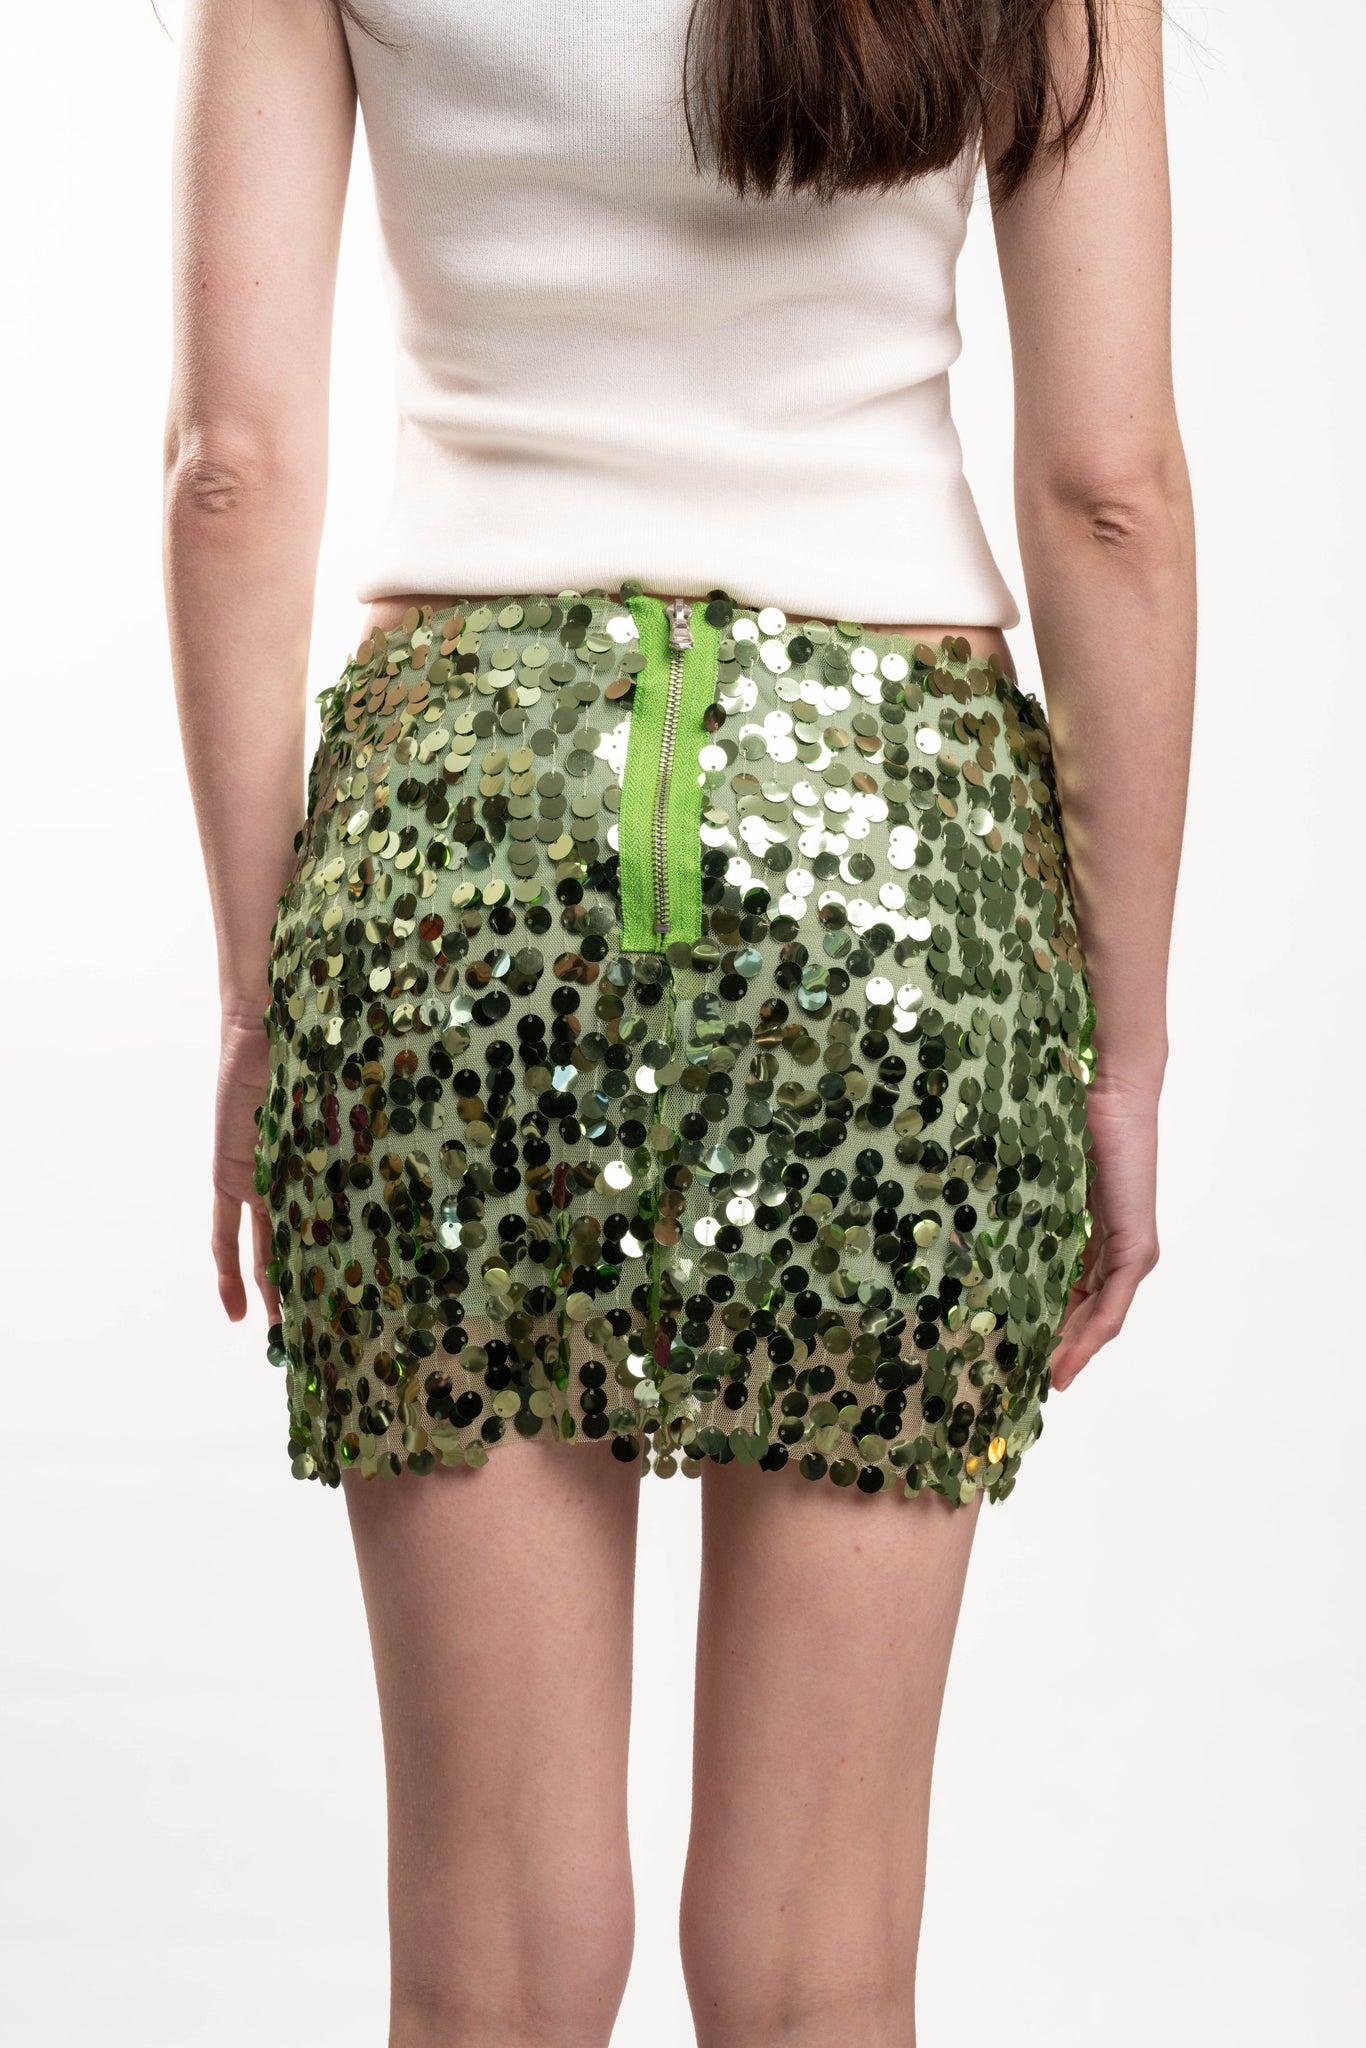 LU S23 Sequence green skirt